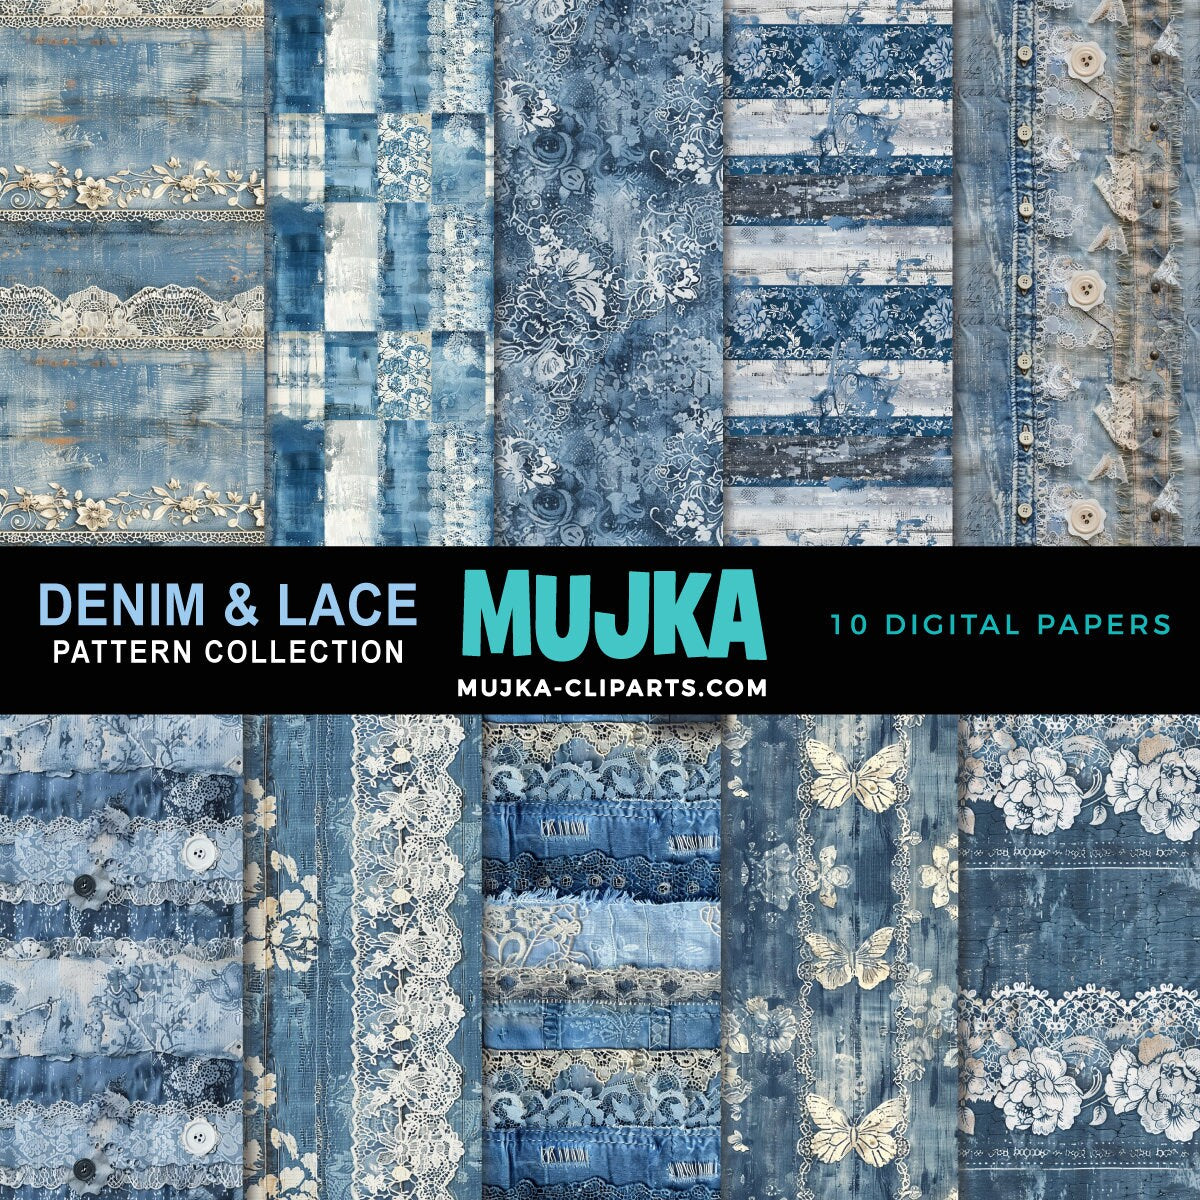 Denim and Lace Digital papers, Vintage denim pattern background, junk journal printables, digital background, distressed scrapbook paper